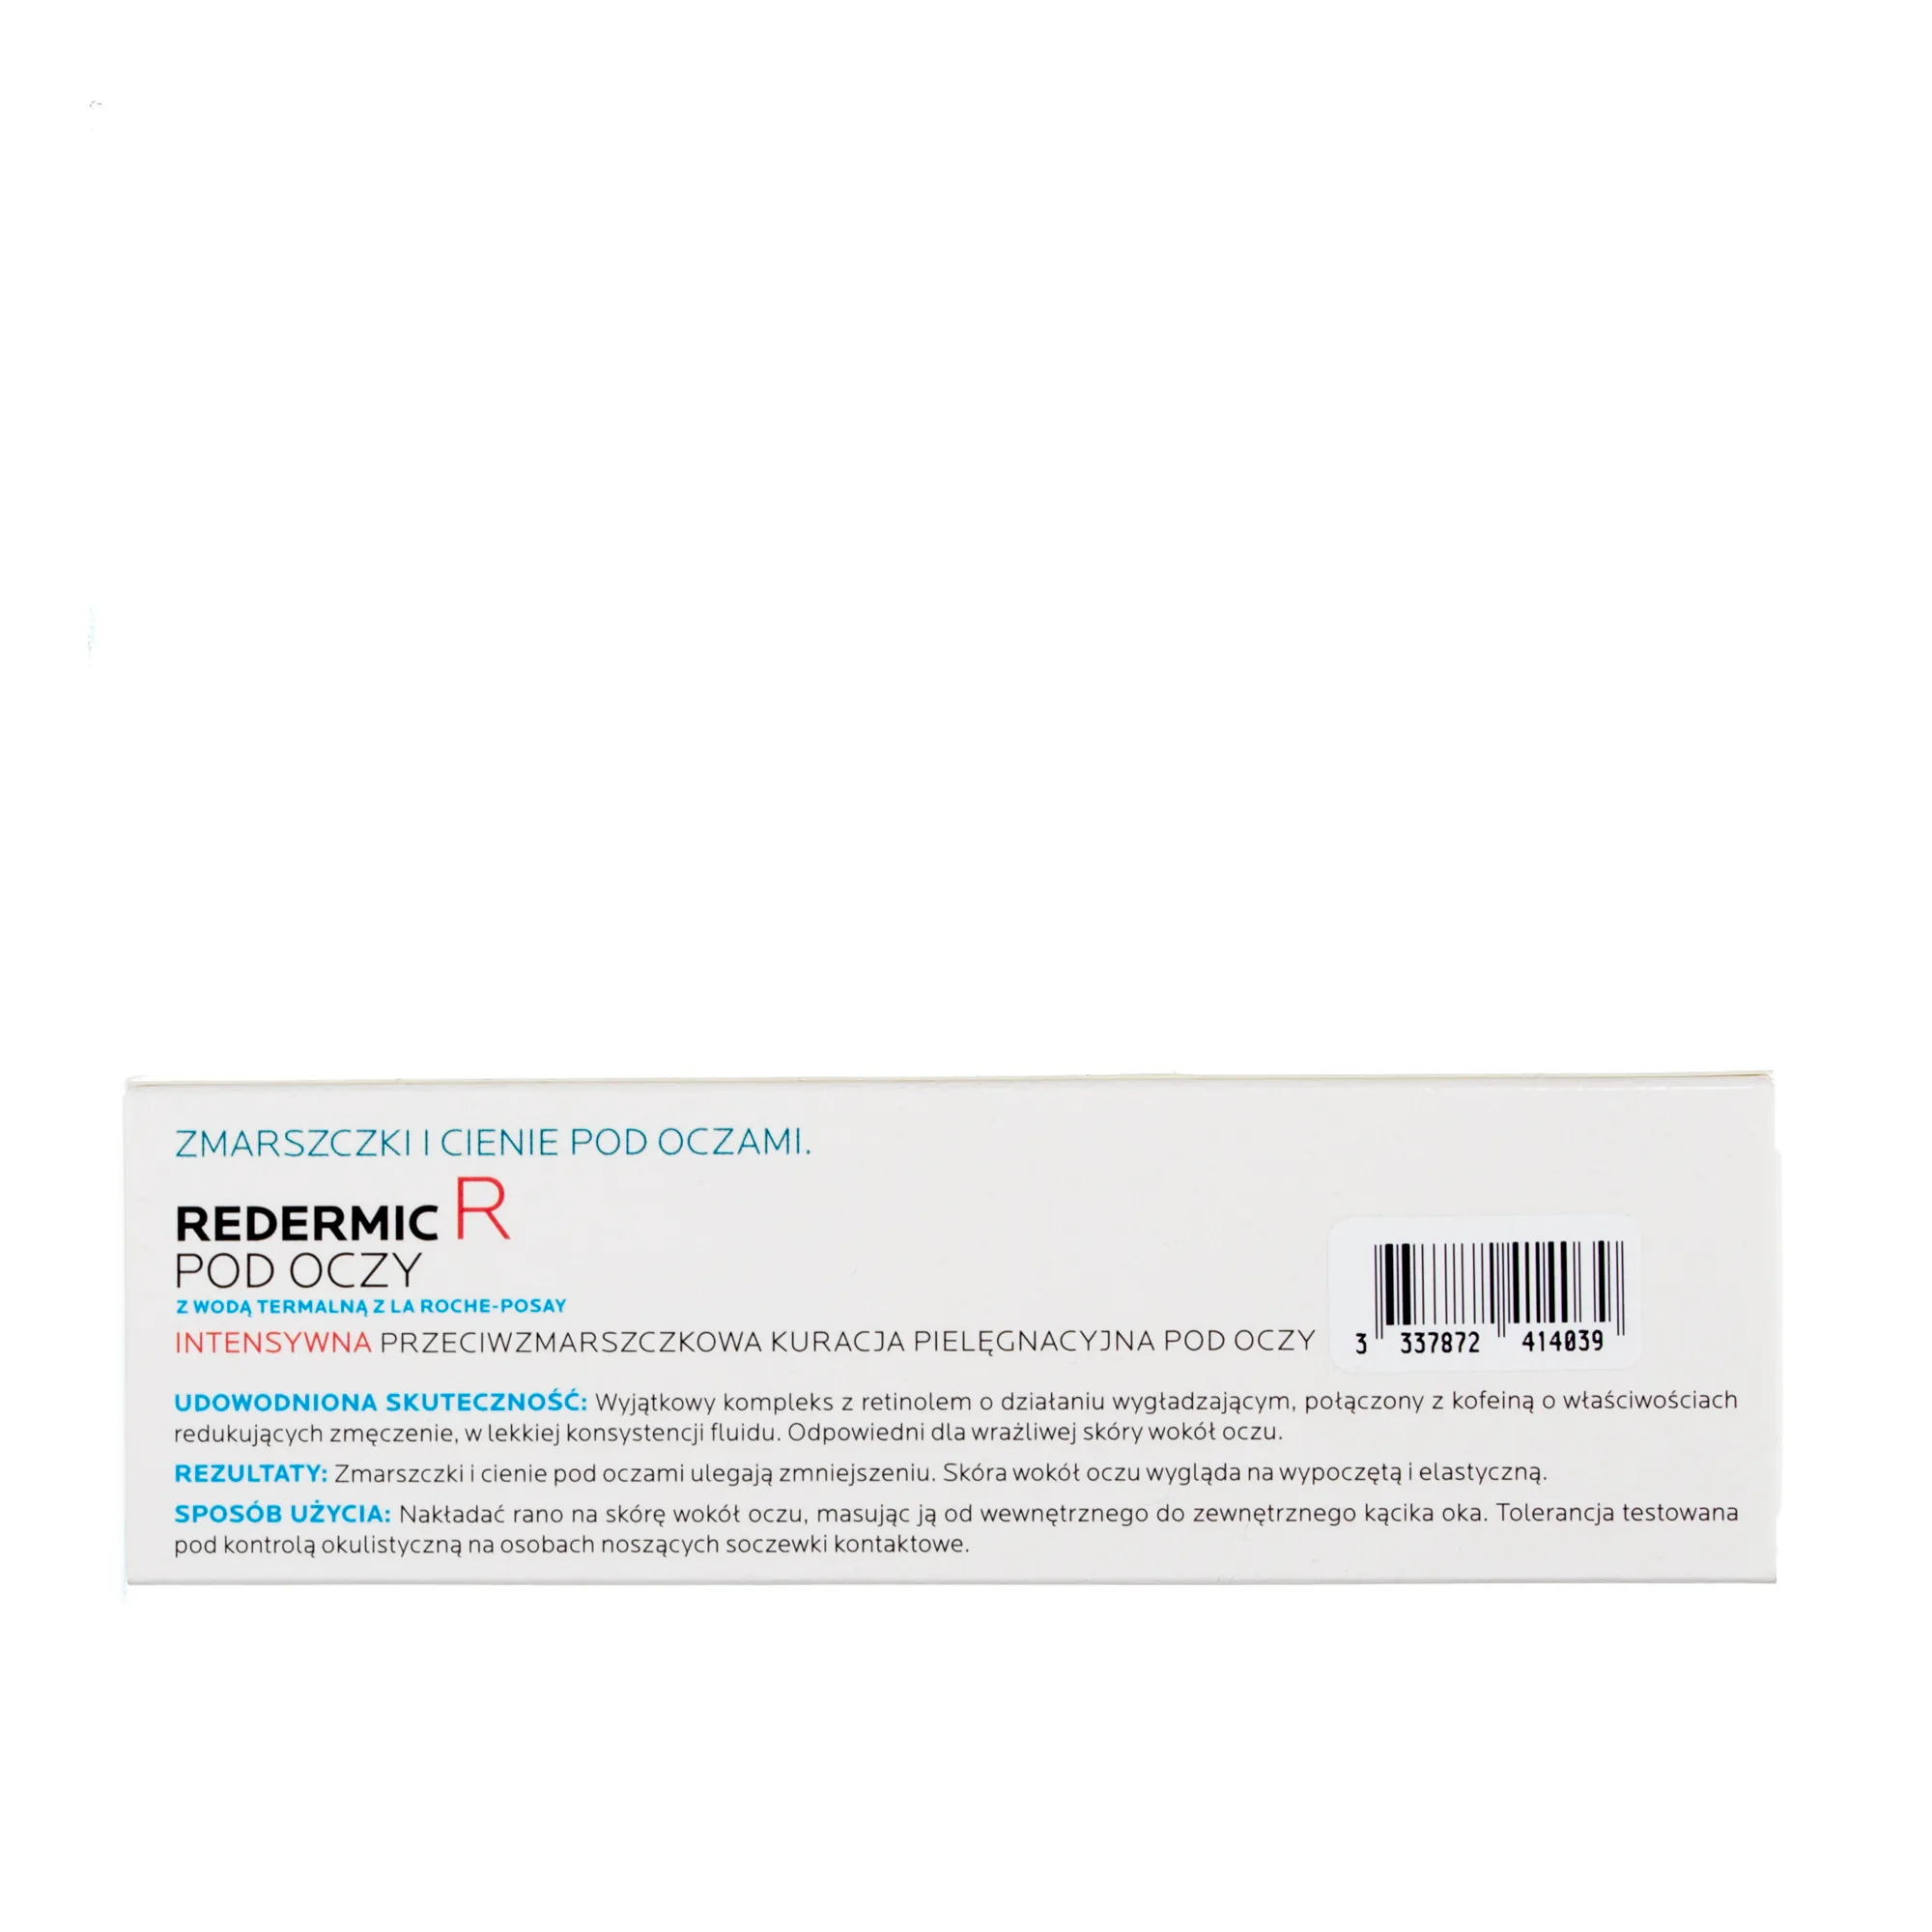 La Roche-Posay Redermic R, intensywna przeciwzmarszczkowa kuracja pielęgnacyjna pod oczy, 15 ml 